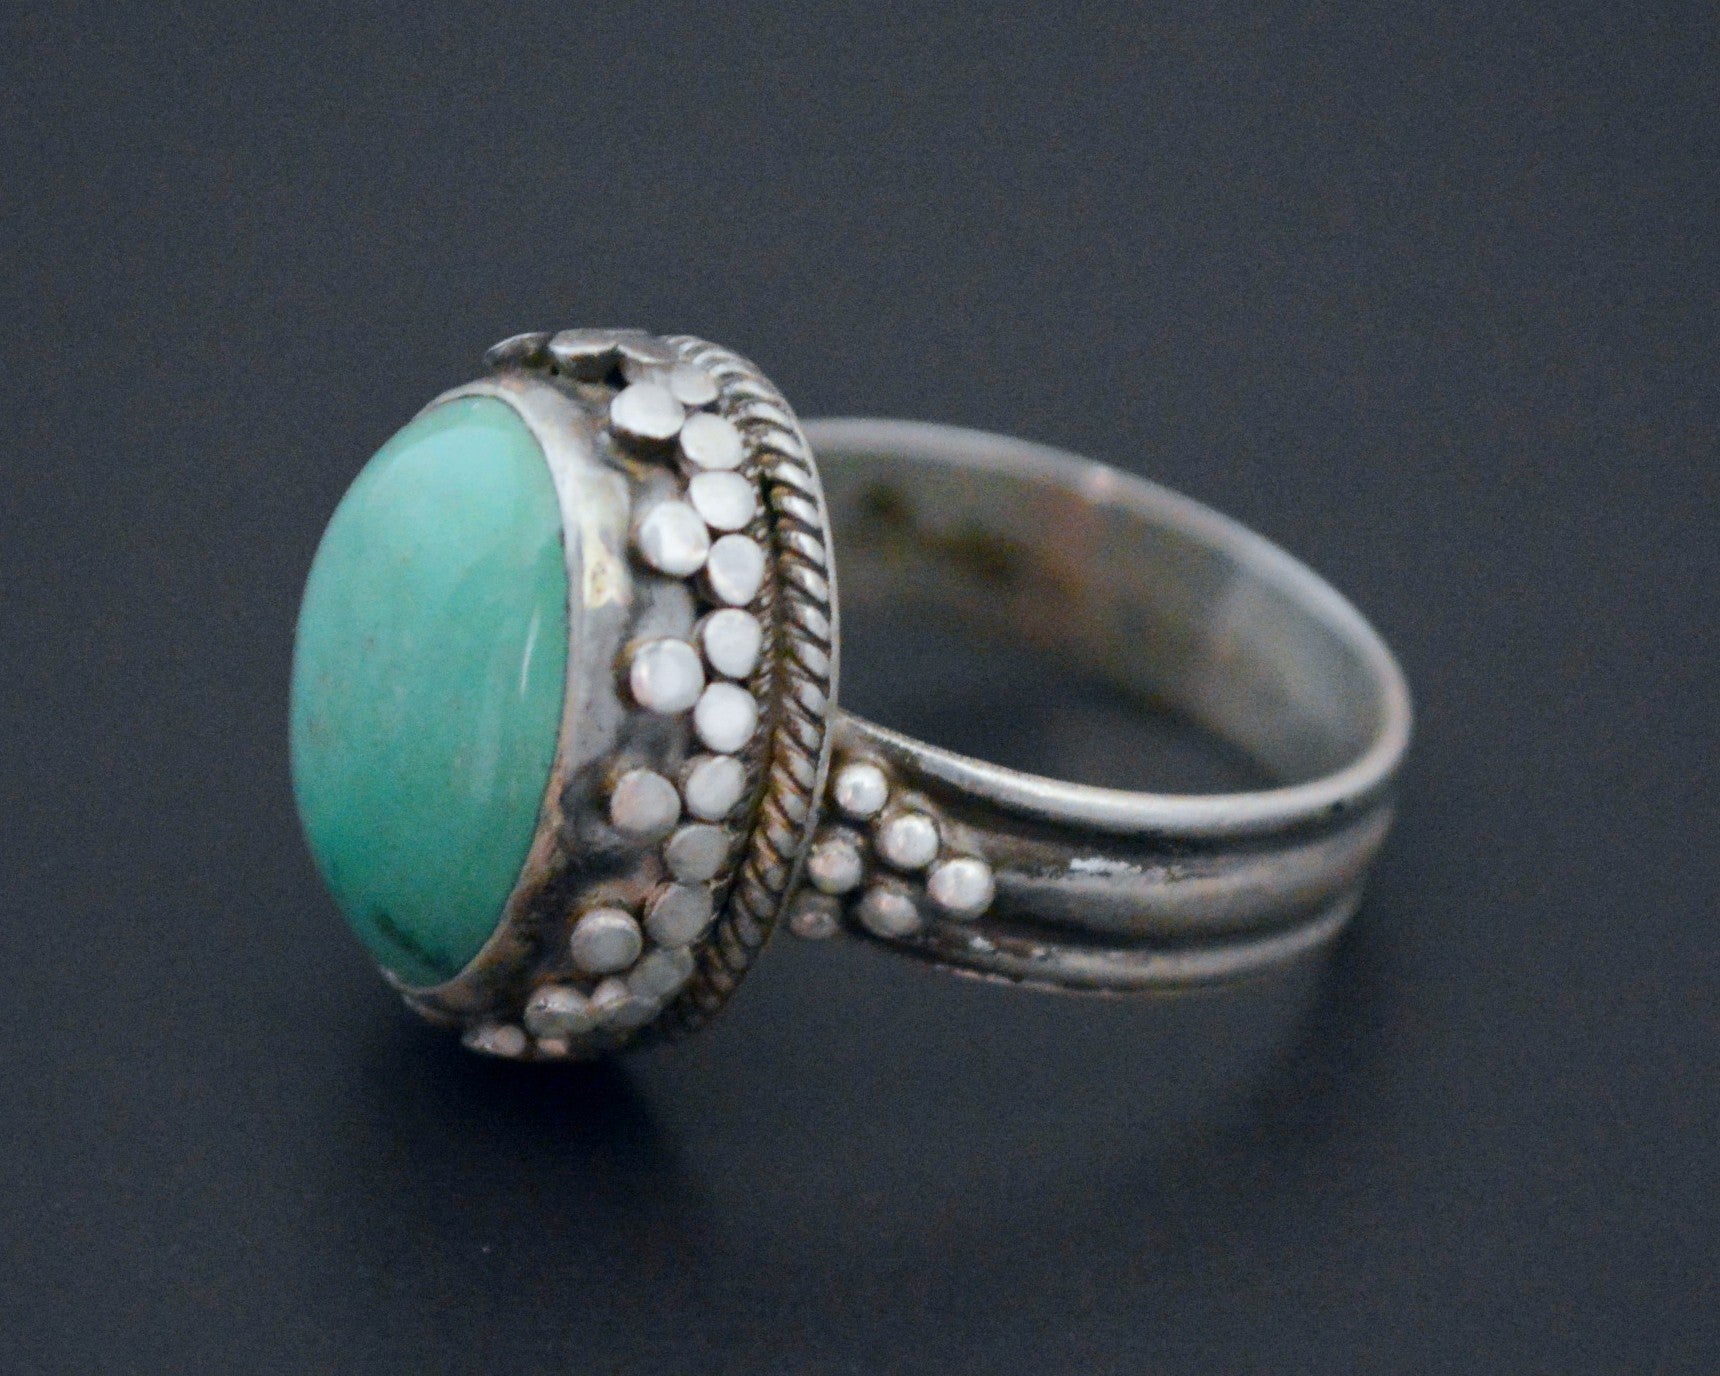 Nepali Turquoise Ring - Size 8.5